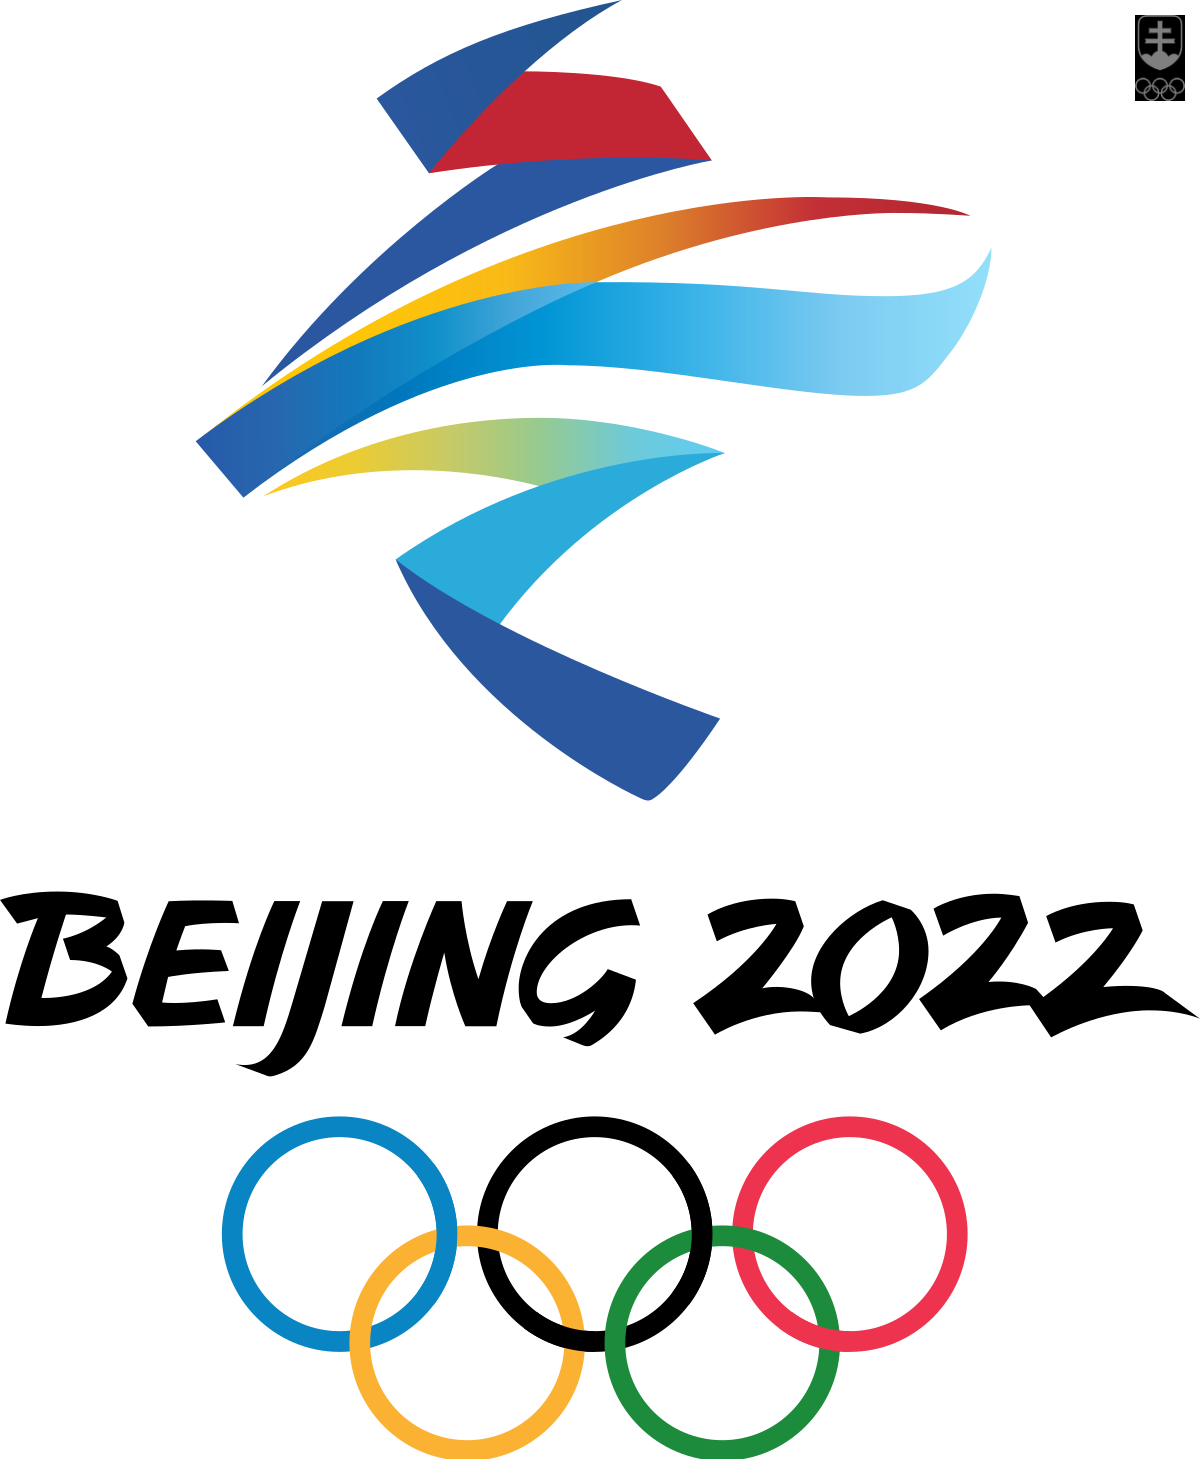 Peking sa na XXIV. zimné olympijské hry vo februári 2022 chystá vo veľkom  štýle | Slovenský olympijský tím